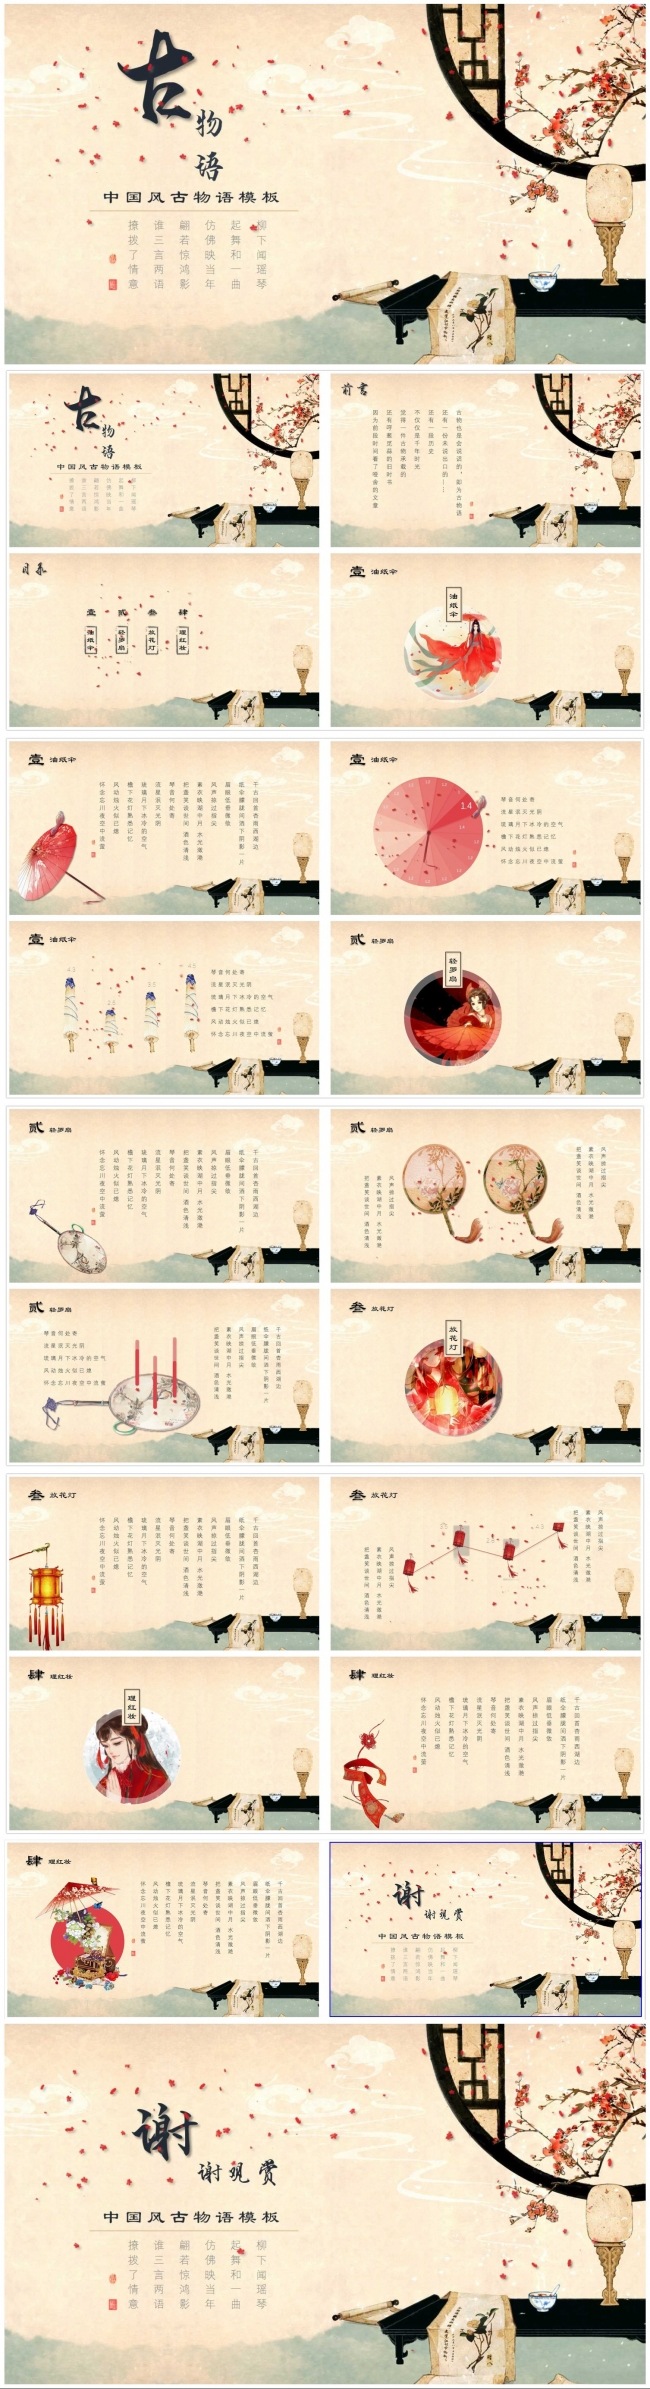 【八月份】唯美中国风古物语PPT模板